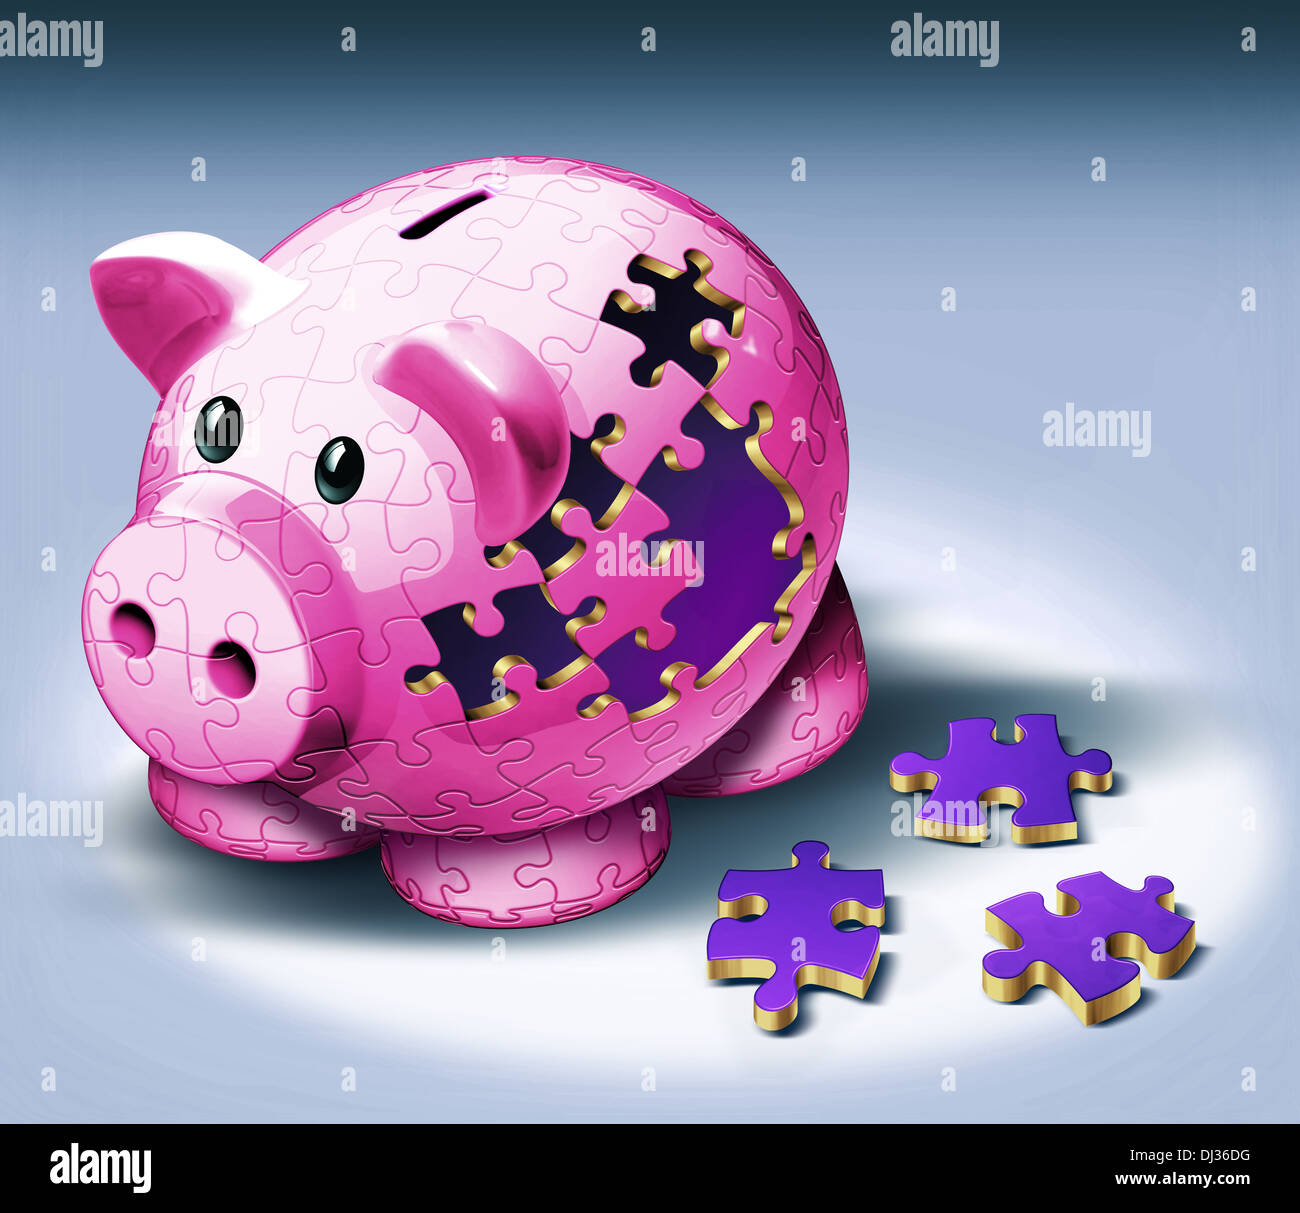 Immagine illustrativa di jigsaw pezzi caduti dal salvadanaio che rappresenta il pagamento di EMI Foto Stock